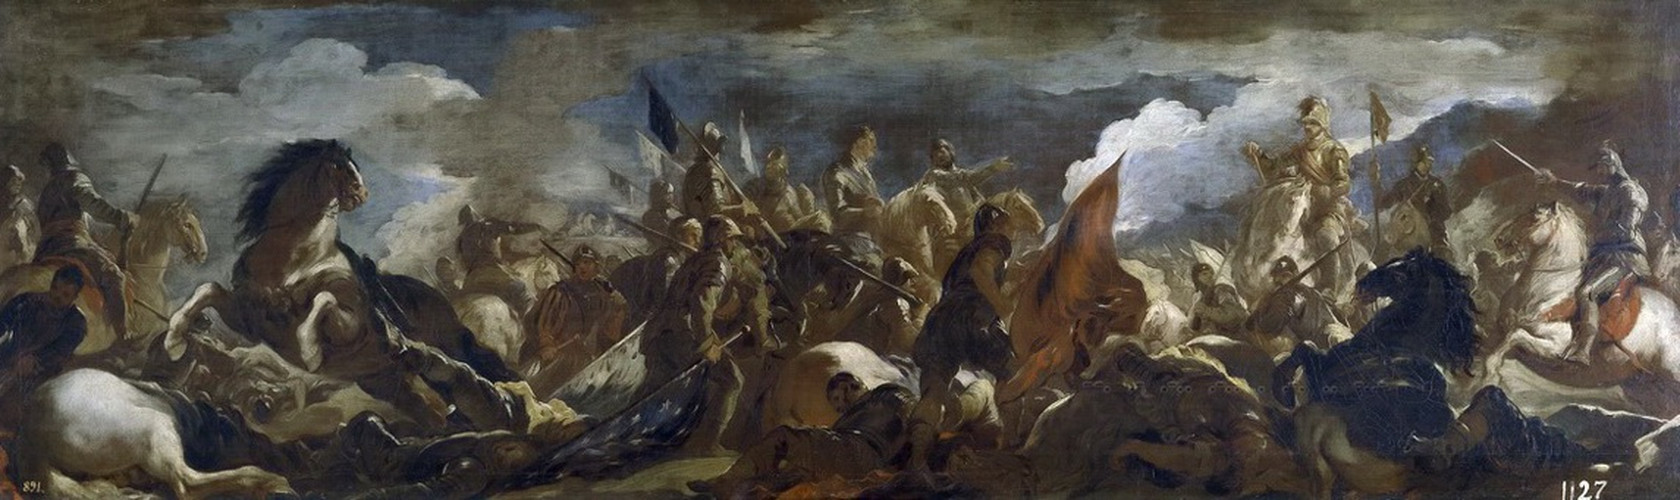 Картина - Пленение коннетабля Монморанси в битве при Сен-Кантене, 1693 №1